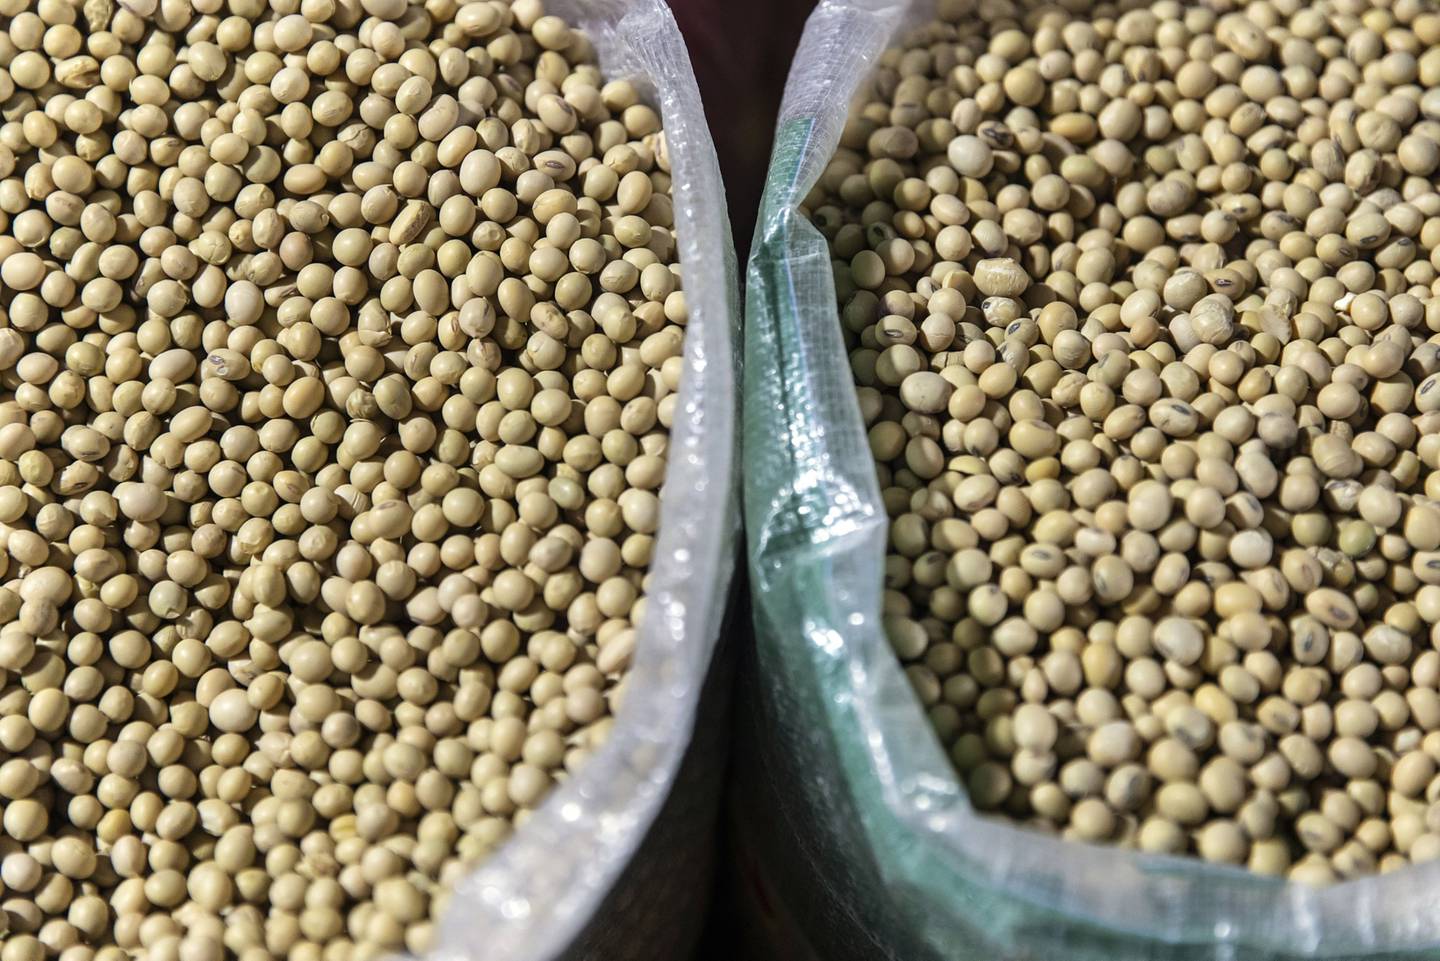 El frijol de soja en un puesto de venta de granos en el mercado de Shanghai, China, el martes 16 de junio, 2020. Los procesadores  de soja chinos necestian más frijoles de soja para el cuarto trimestre y comienzos del próximo año a medida que los suministros de Brasil se agotan en temporarda.